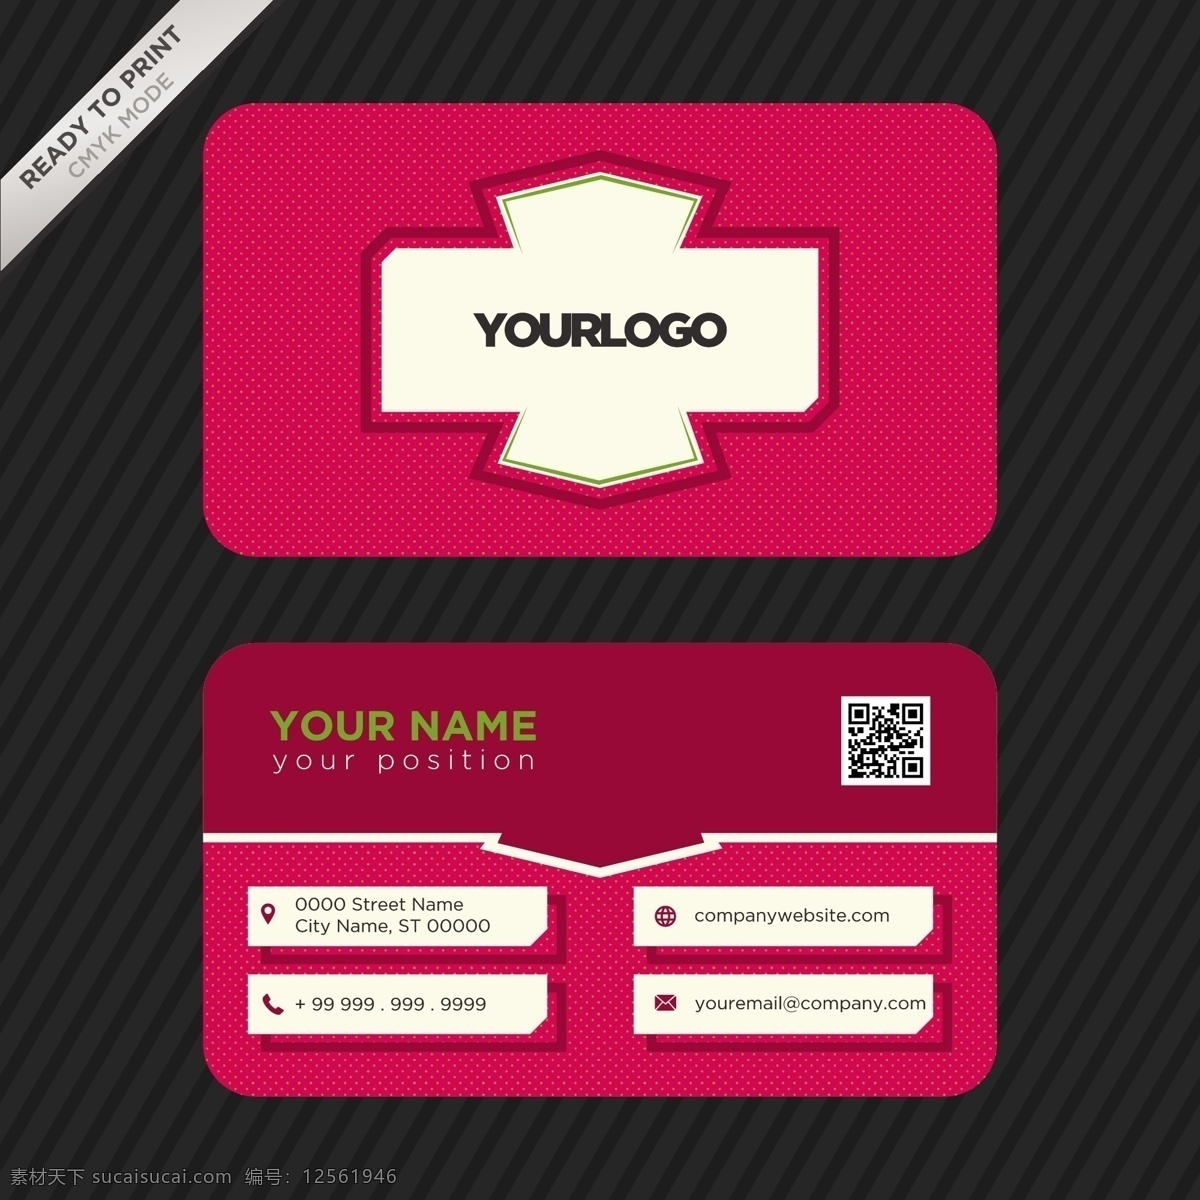 名片模板设计 商标 名片 商业 抽象 卡片 模板 办公室 颜色 展示 文具 公司 抽象标志 企业标识 现代 身份 身份证 商业标识